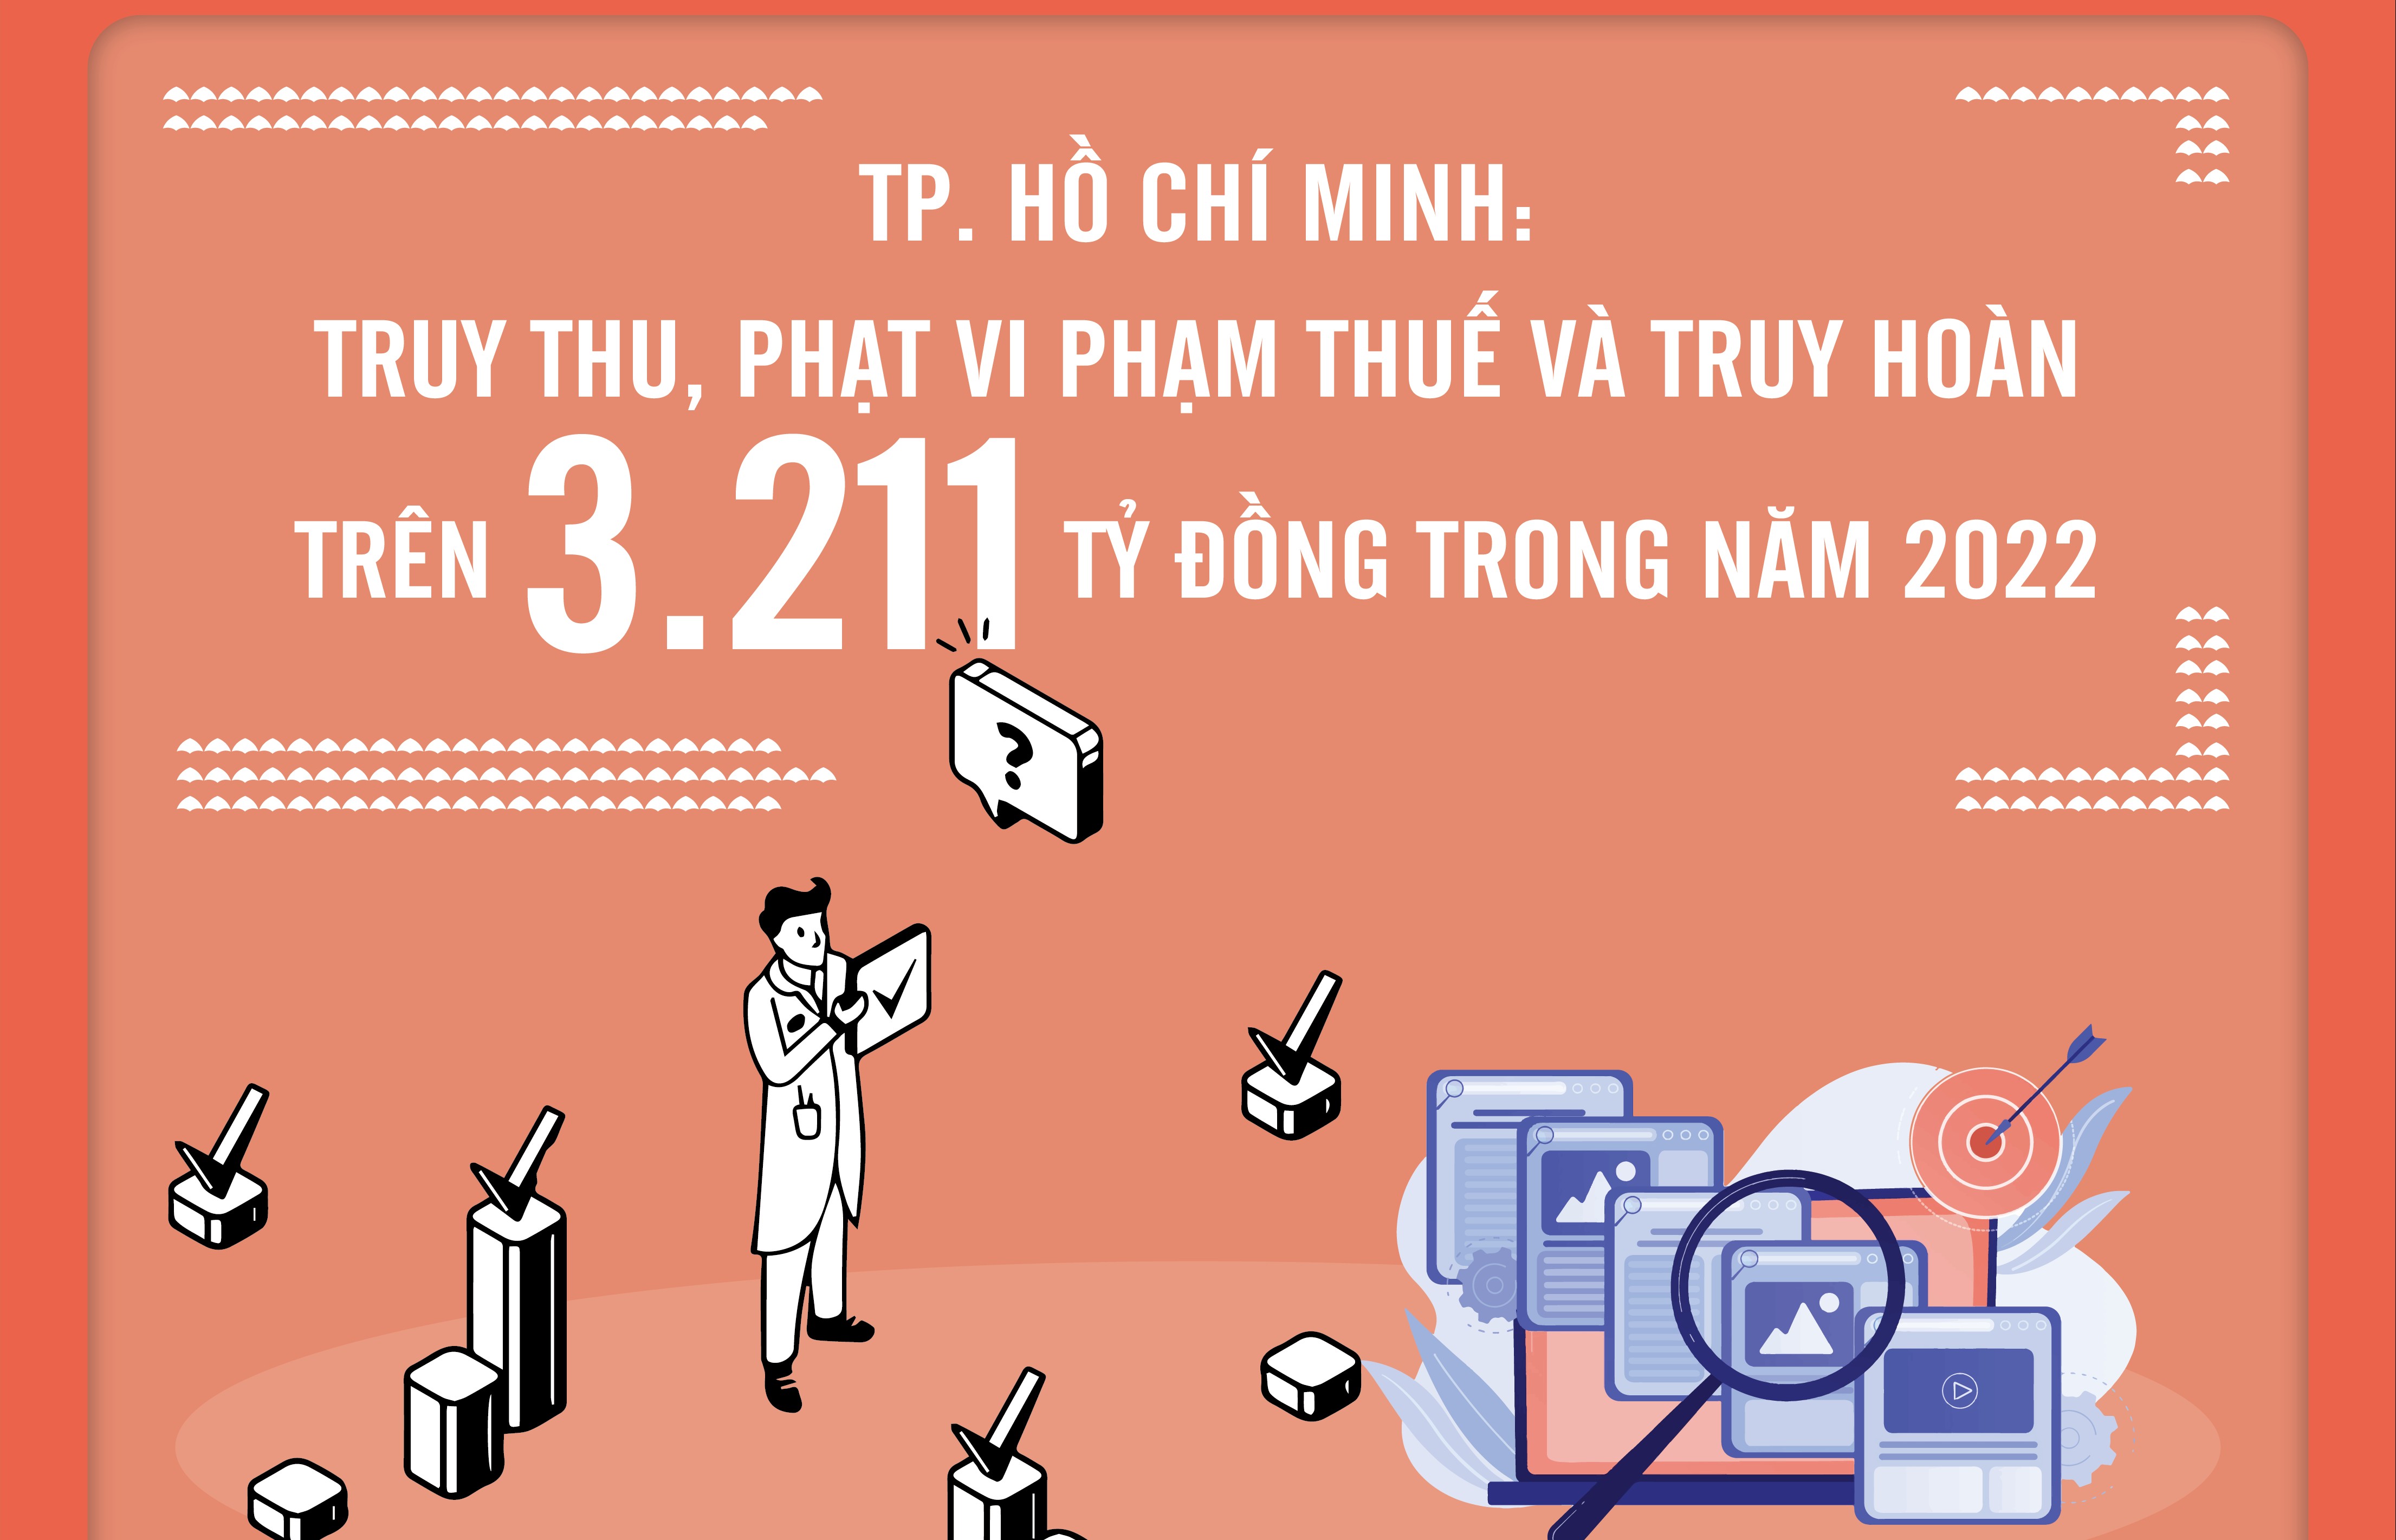 TP. Hồ Chí Minh: Truy thu, phạt vi phạm thuế và truy hoàn trên 3.211 tỷ đồng trong năm 2022